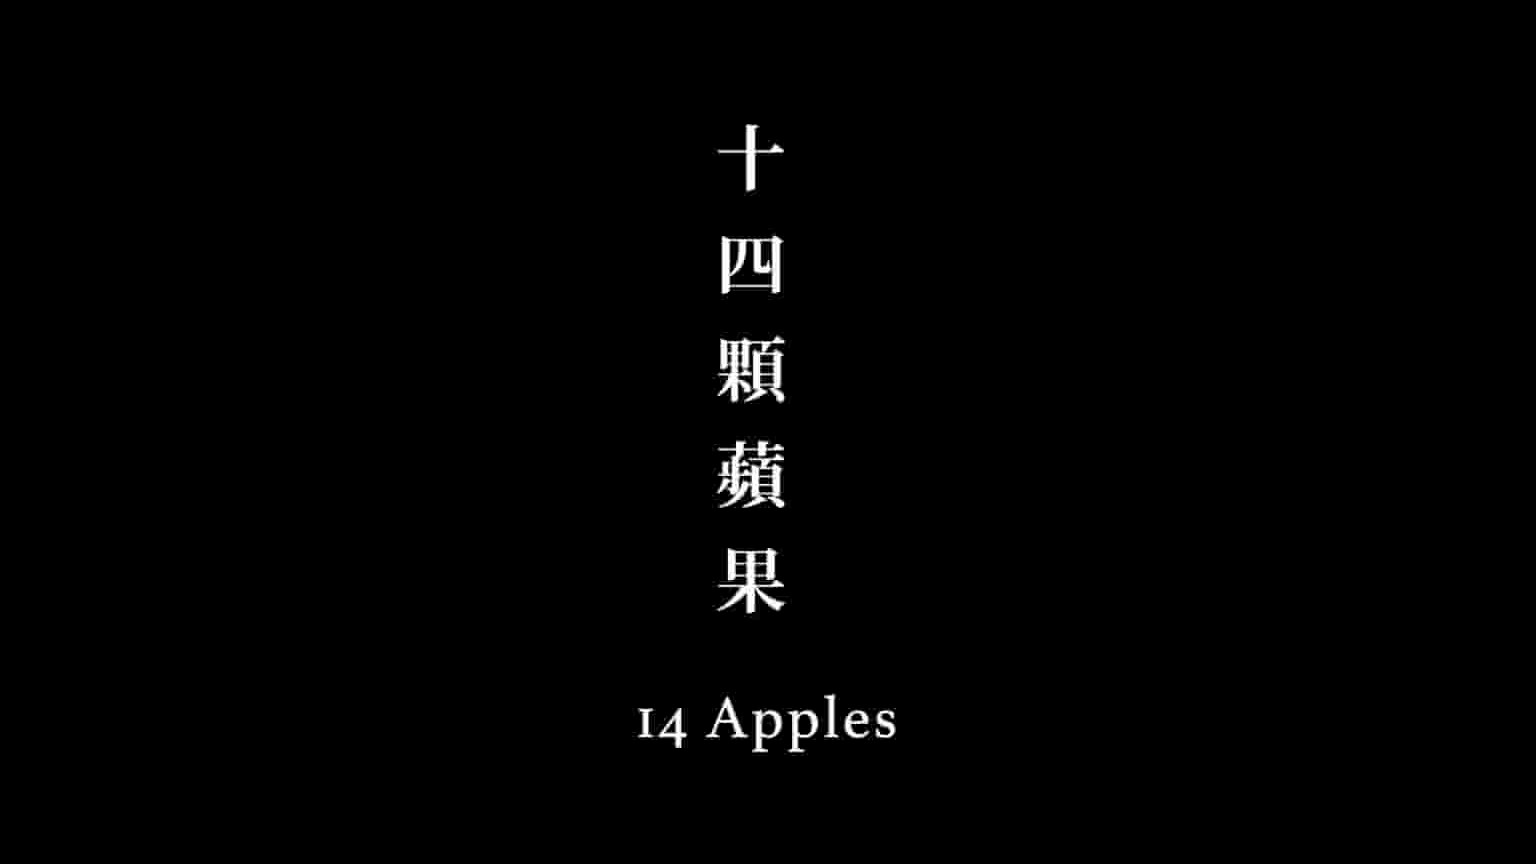 台湾纪录片《十四颗苹果 4 Apples 2019》全1集 缅甸语中字 1080P高清网盘下载